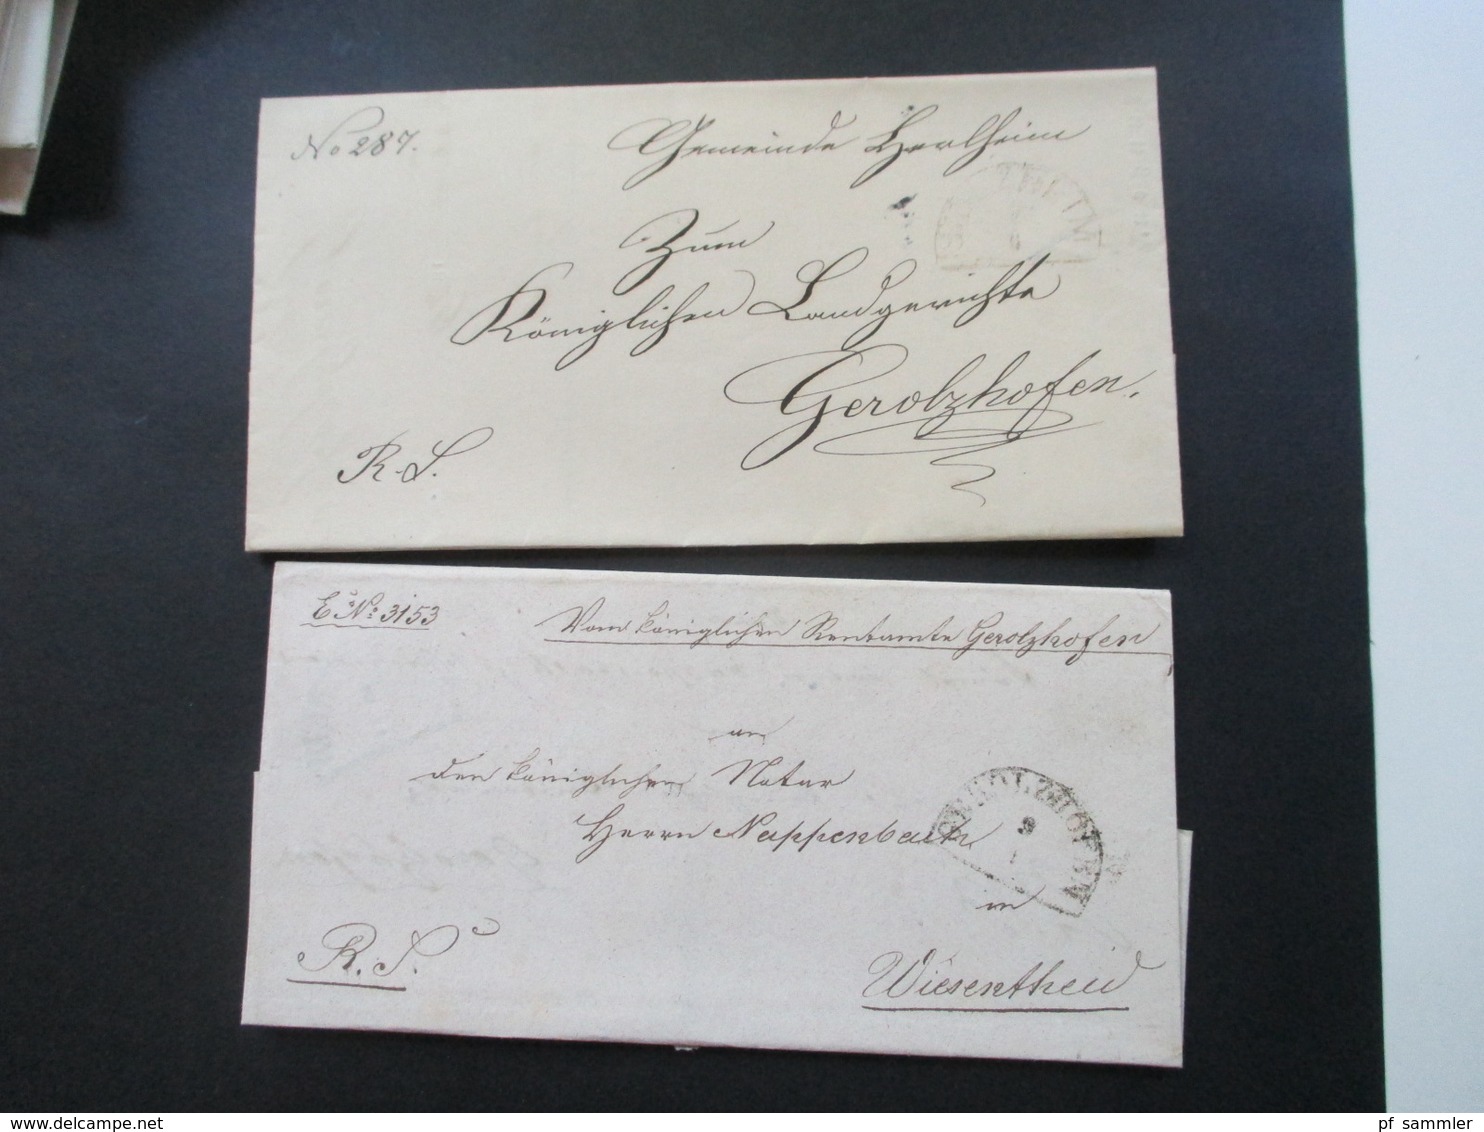 Altdeutschland Bayern 1870er Jahre 90 Dienstbriefe mit Halbkreisstempel. Auch verschiedene Farben! z.T. mit Inhalt!